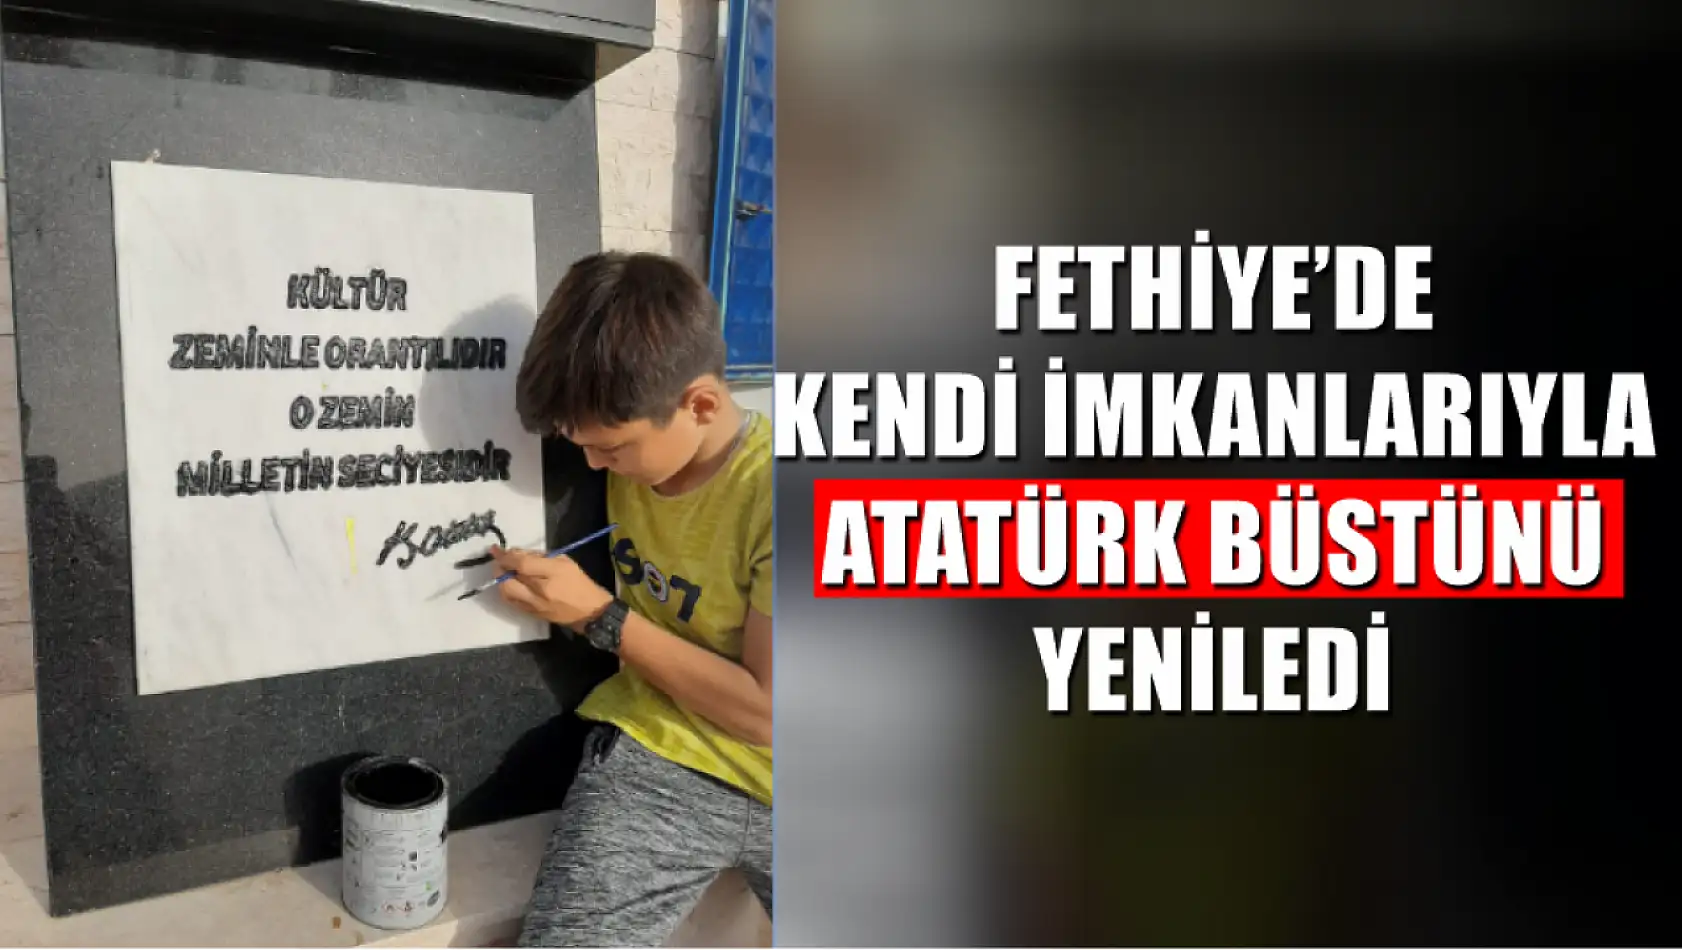 Fethiye'de Kendi İmkanlarıyla Atatürk Büstünü Yeniledi